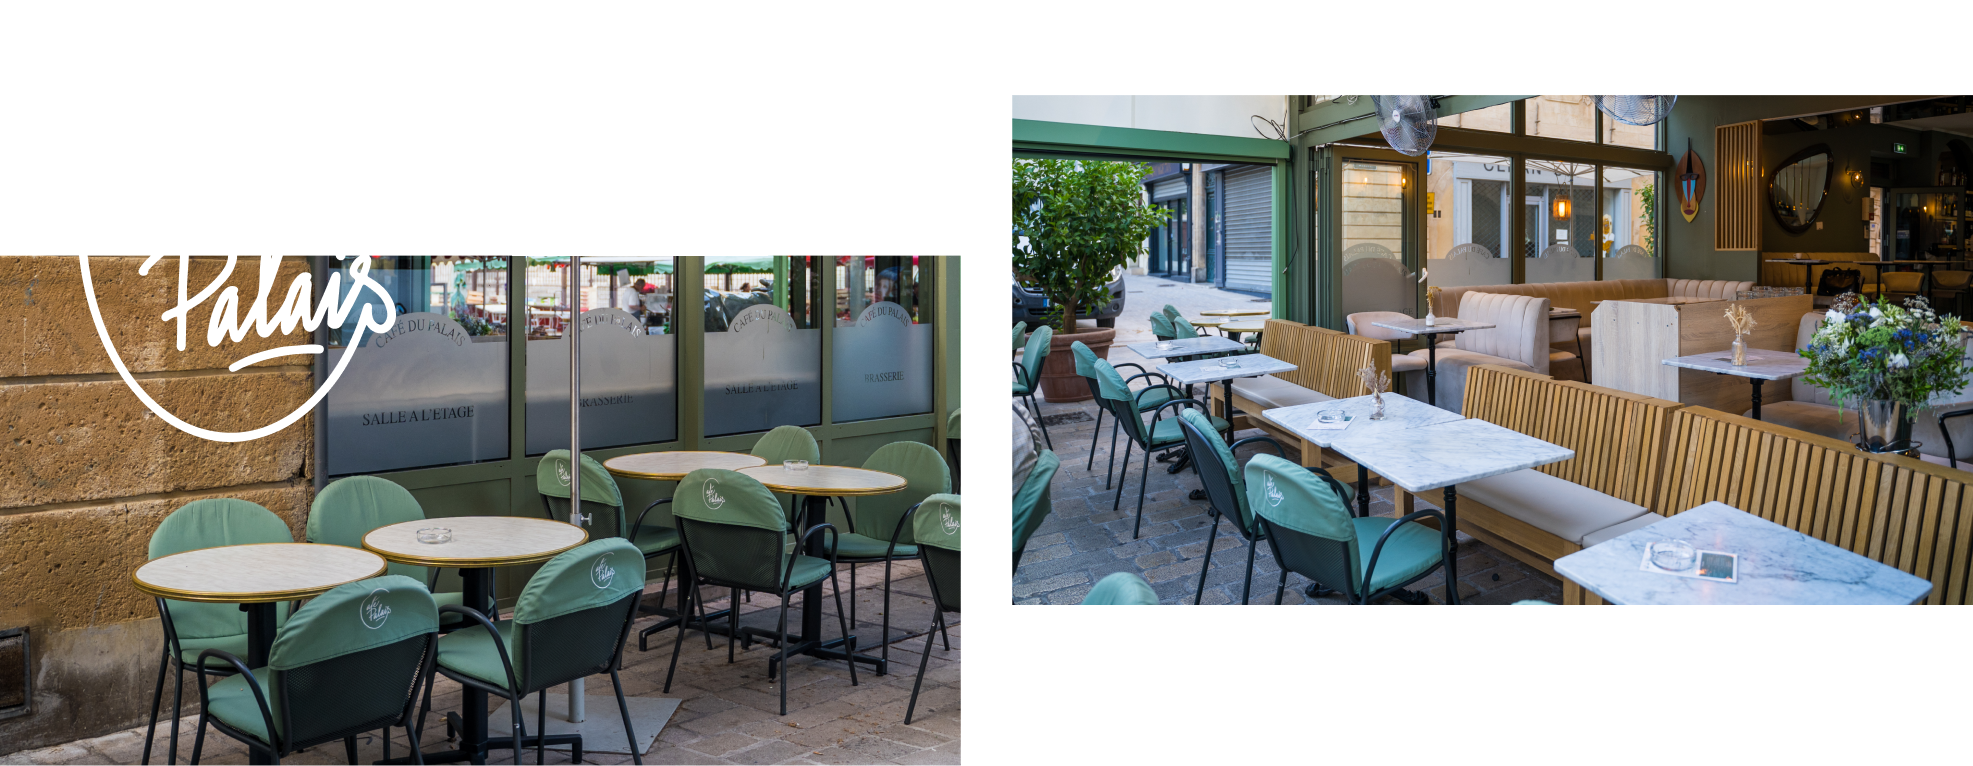 Le restaurant - Café du Palais - Aix-en-provence